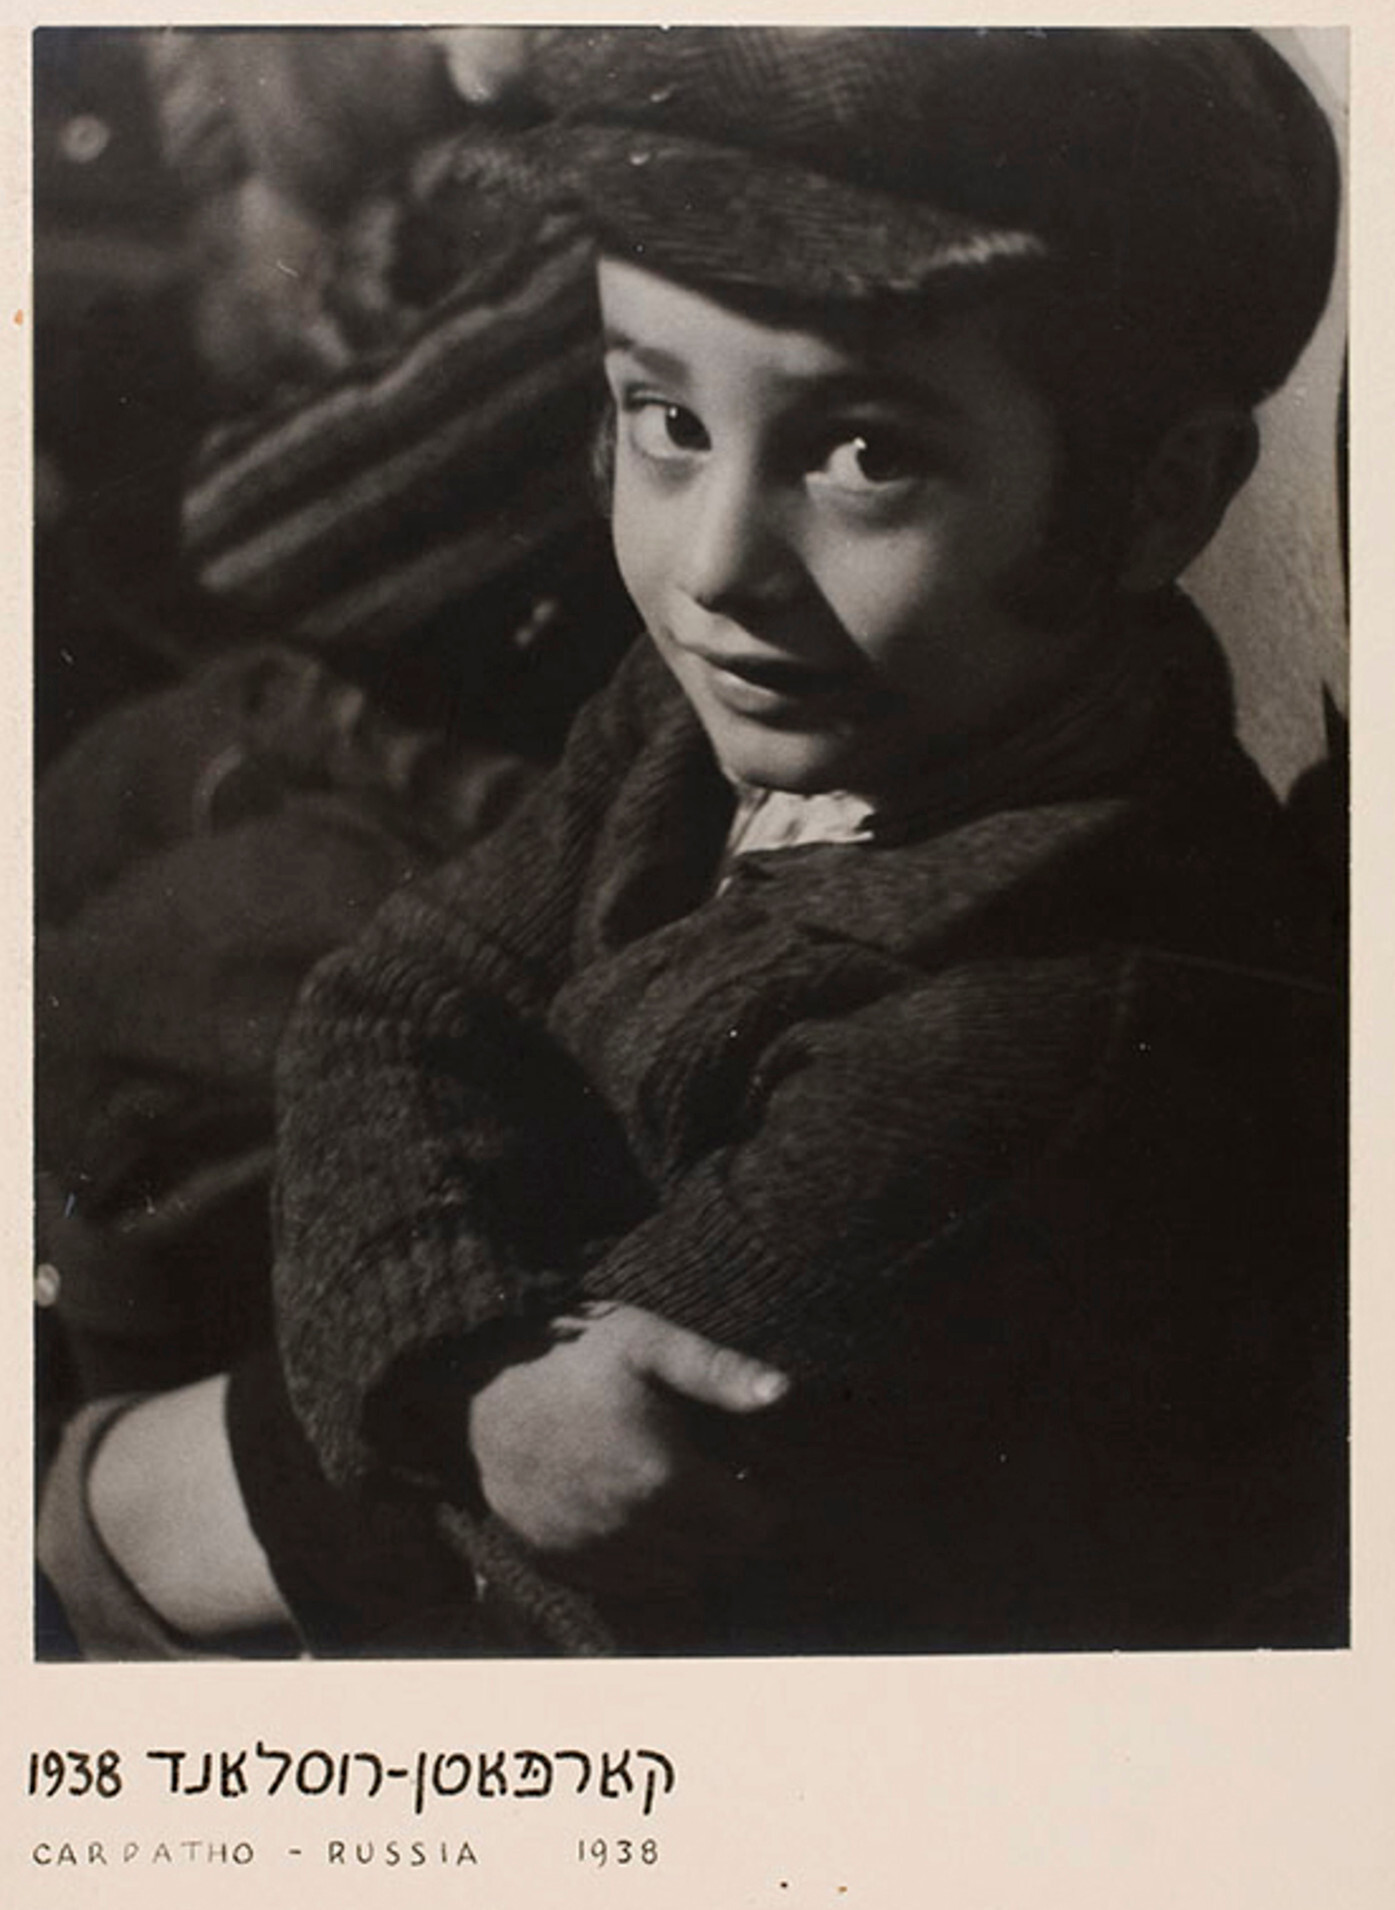 Ученик хедера (еврейская начальная школа), Карпатская Русь, ок. 1935–38 г. Фотограф Роман Вишняк